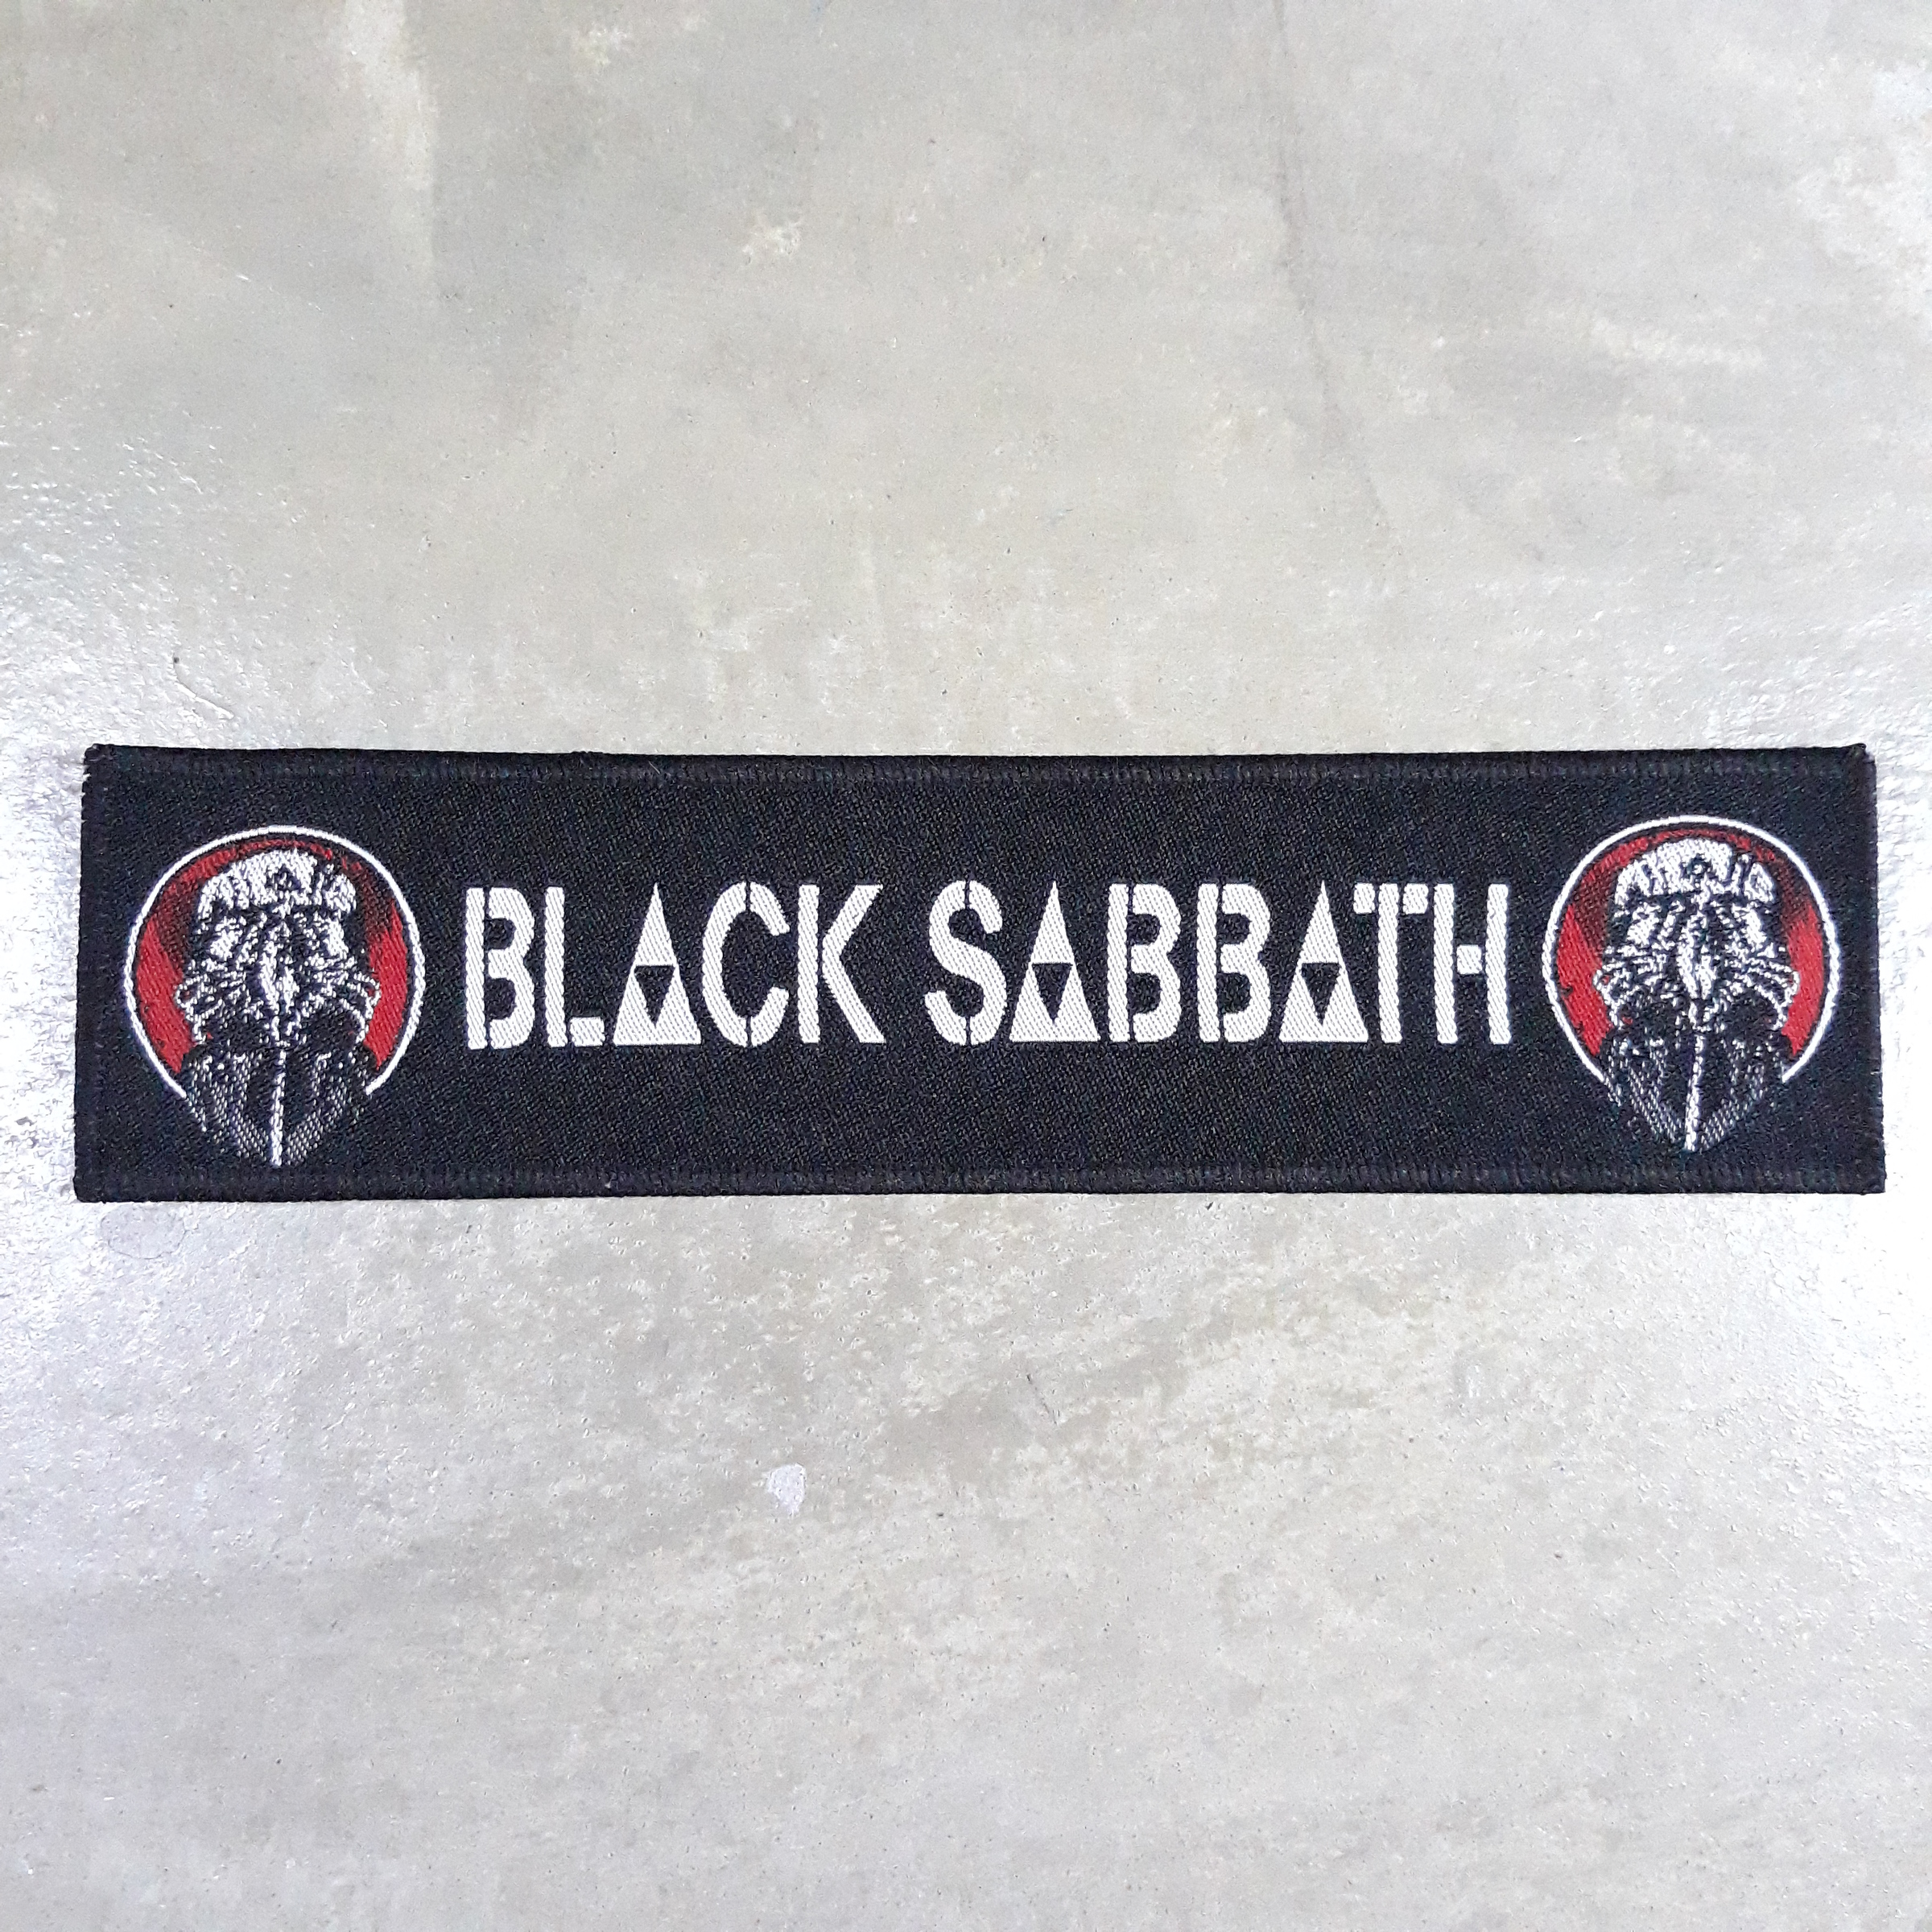 Black sabbath woven patch